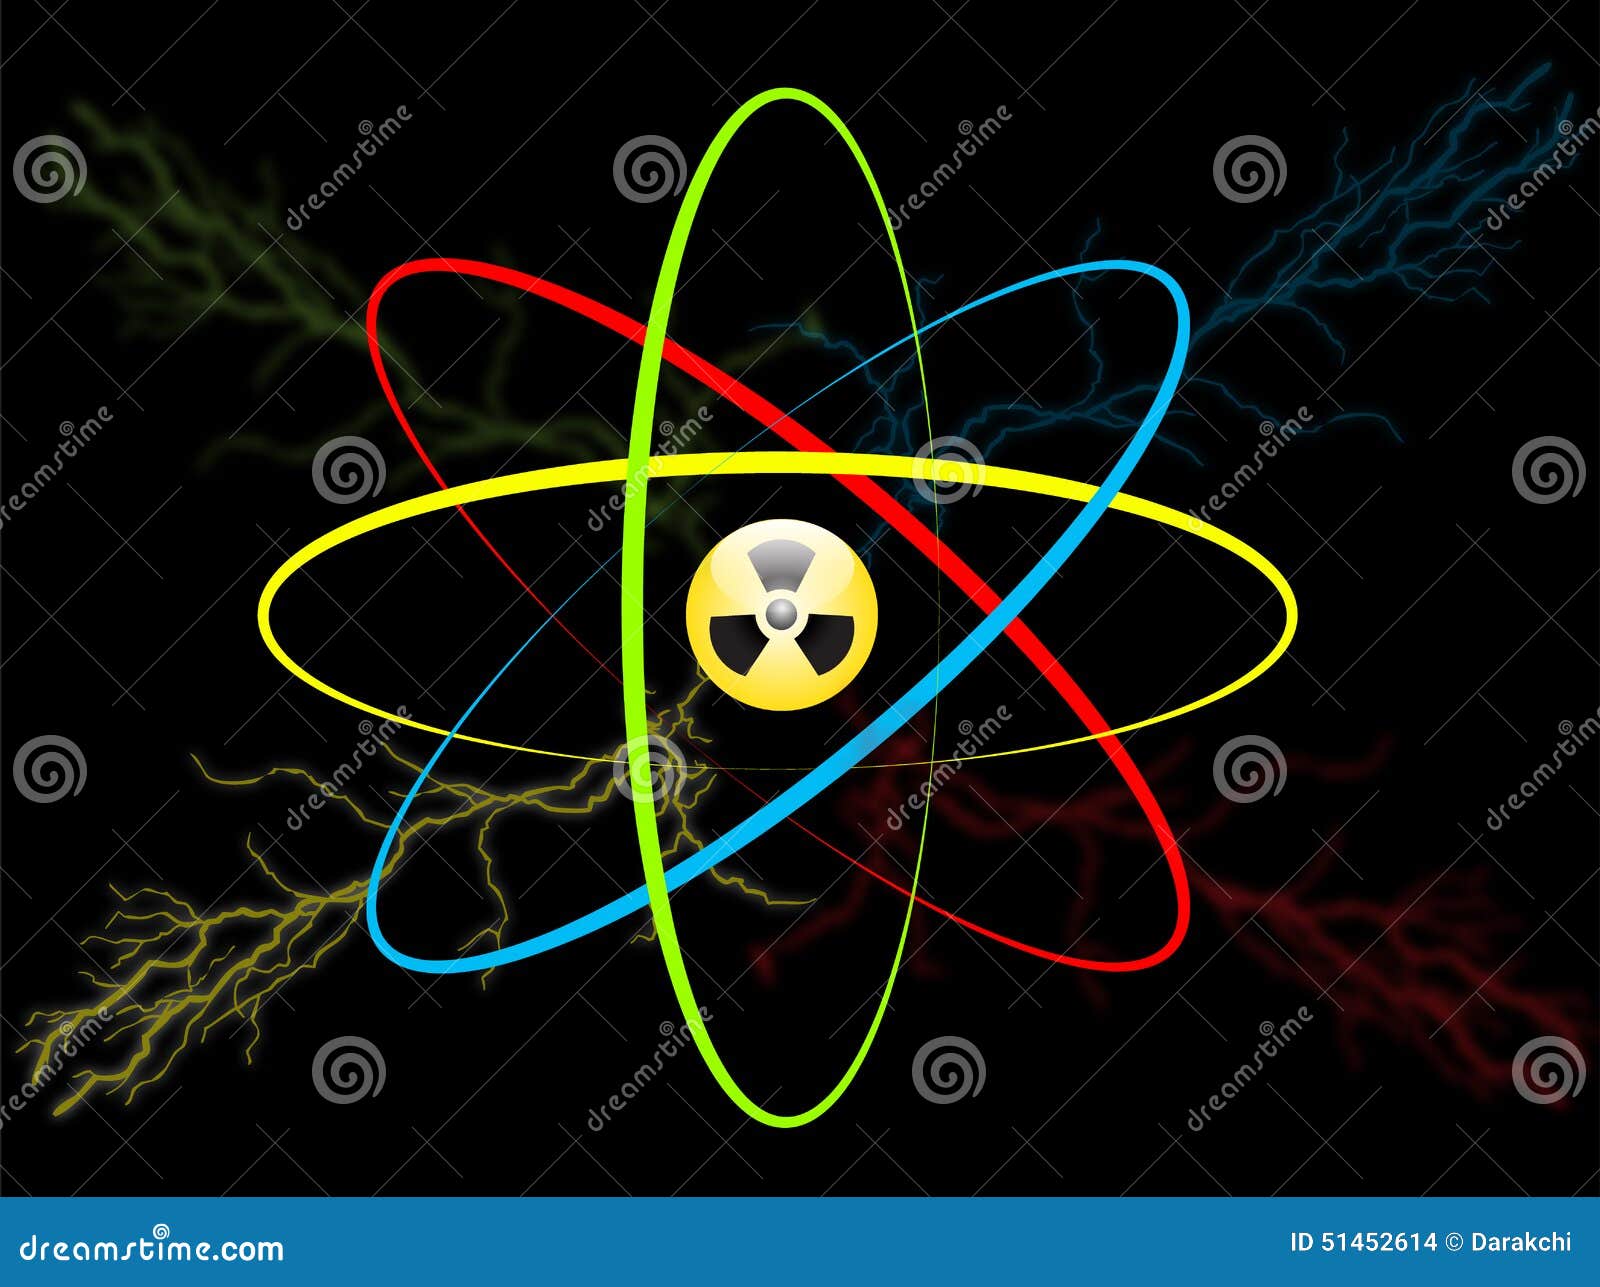 Атом высокой энергии. Эмблема атома. Атом. Атомная энергия символ. Значок атомной энергии.